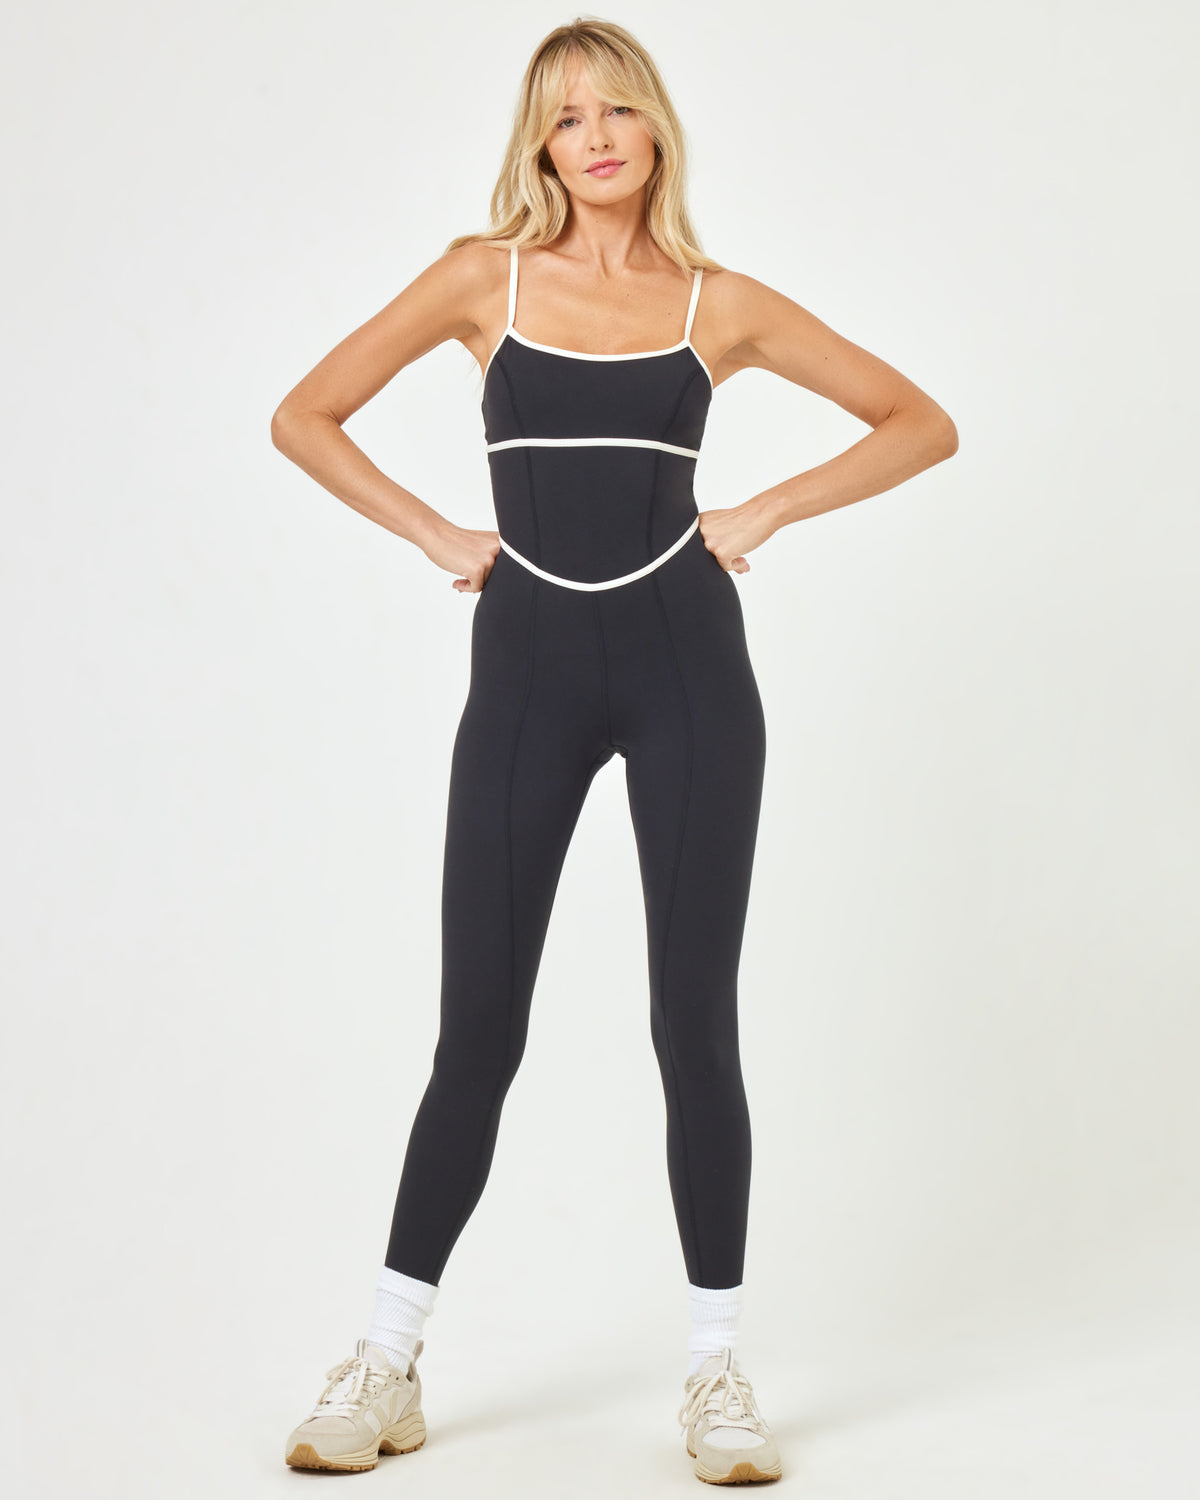 Ace Jumpsuit - Black-Cream Black-Cream | Model: Lura (size: S)